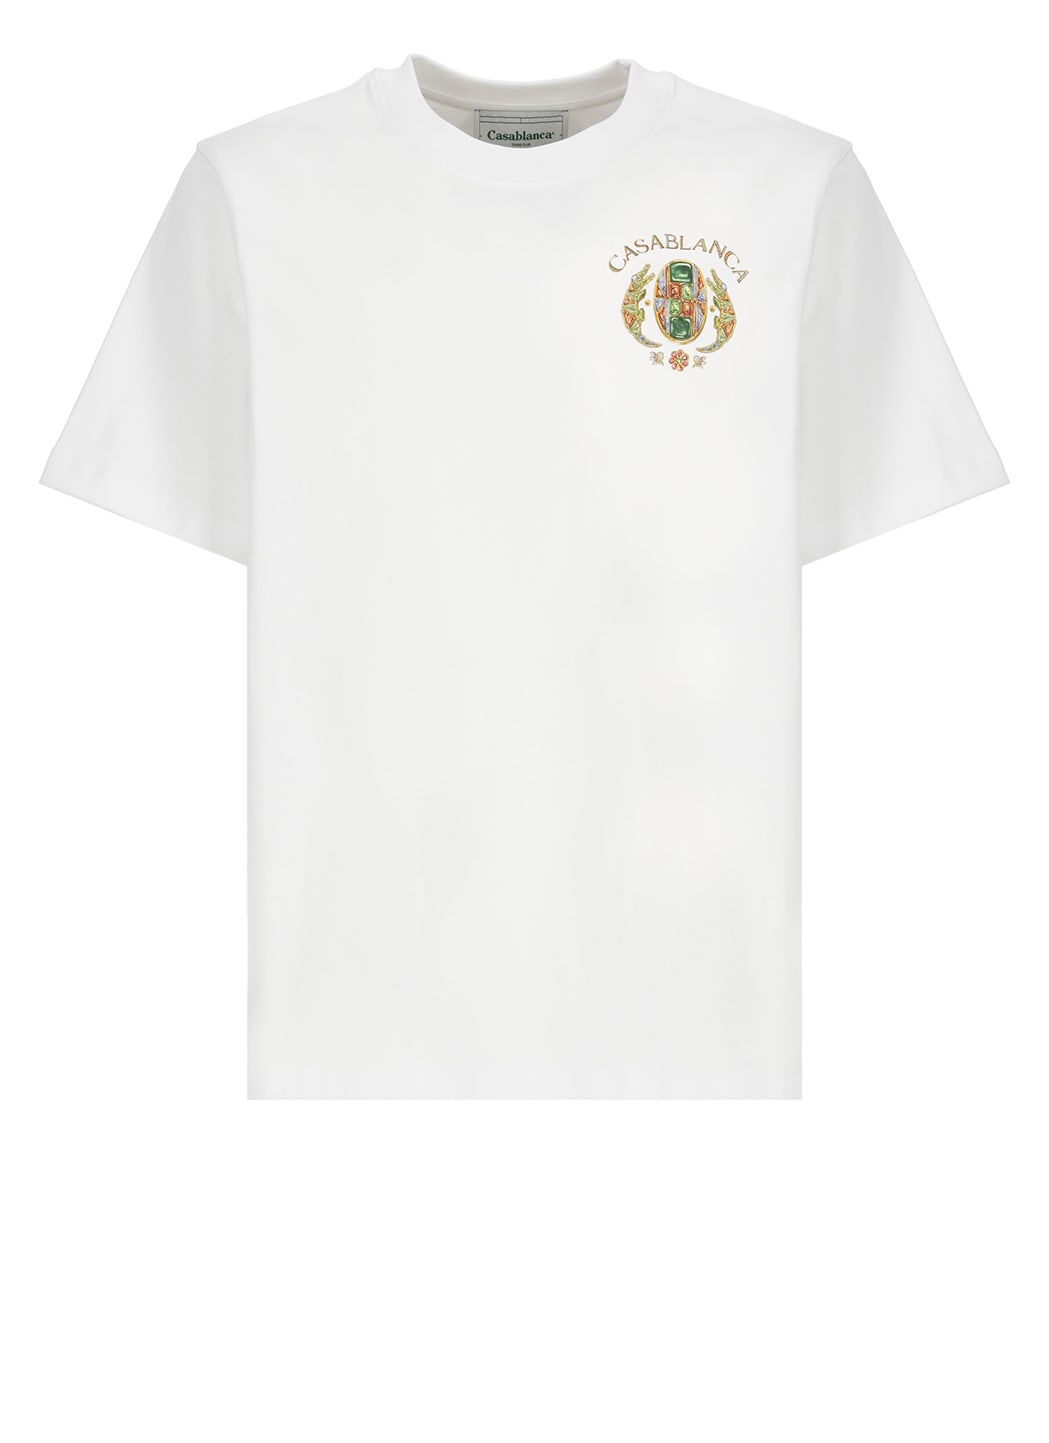 Shop Casablanca Joyaux Dafrique Tennis Club T-shirt In White